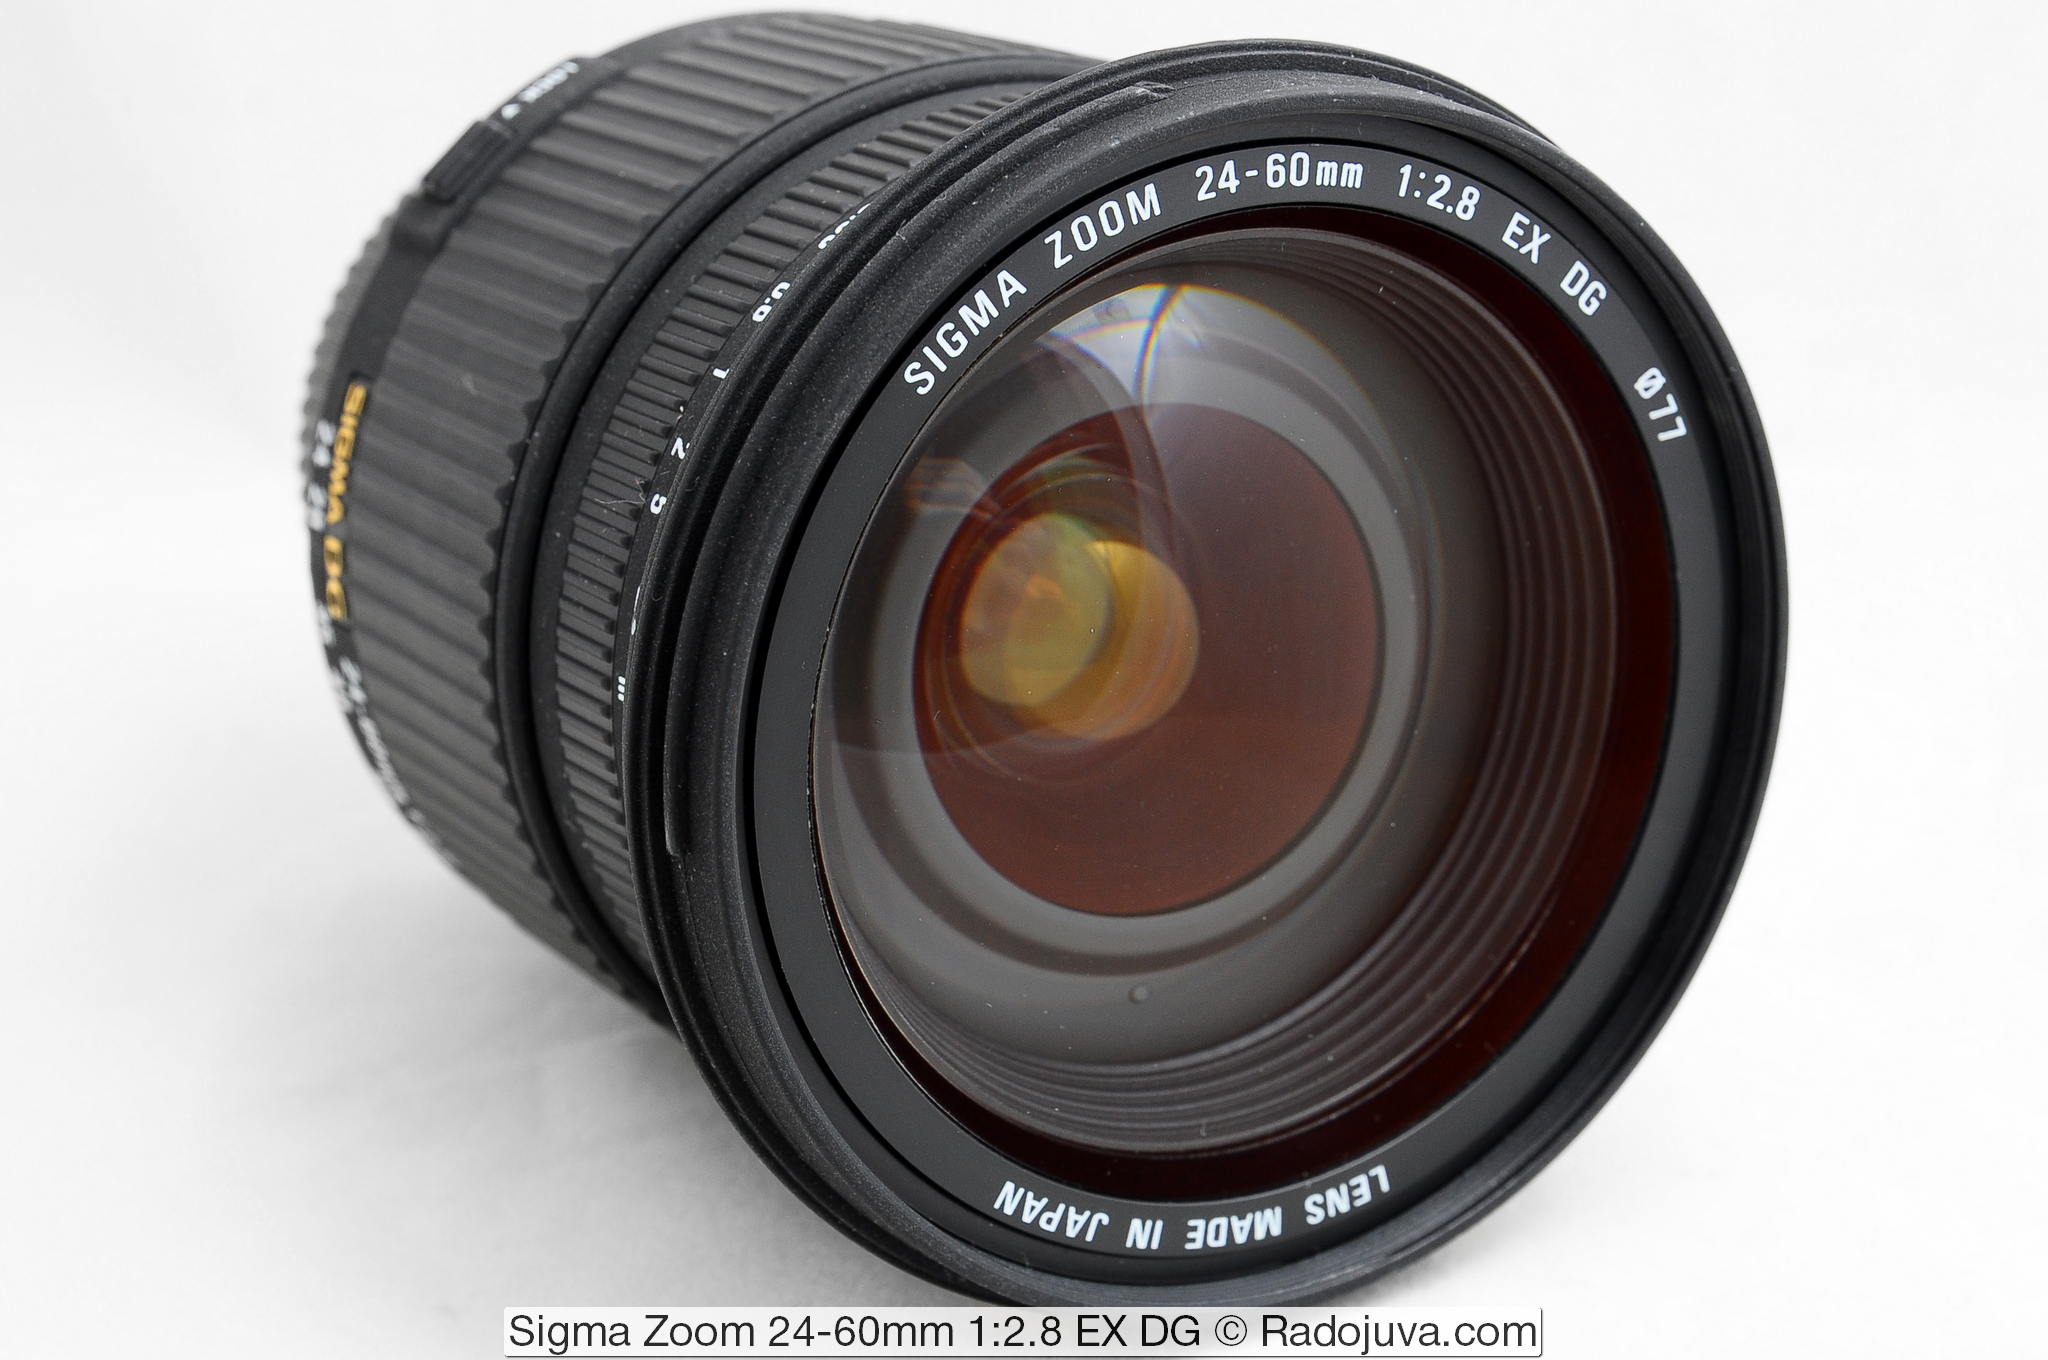 Sigma Zoom 24-60mm 1:2.8 EX DG